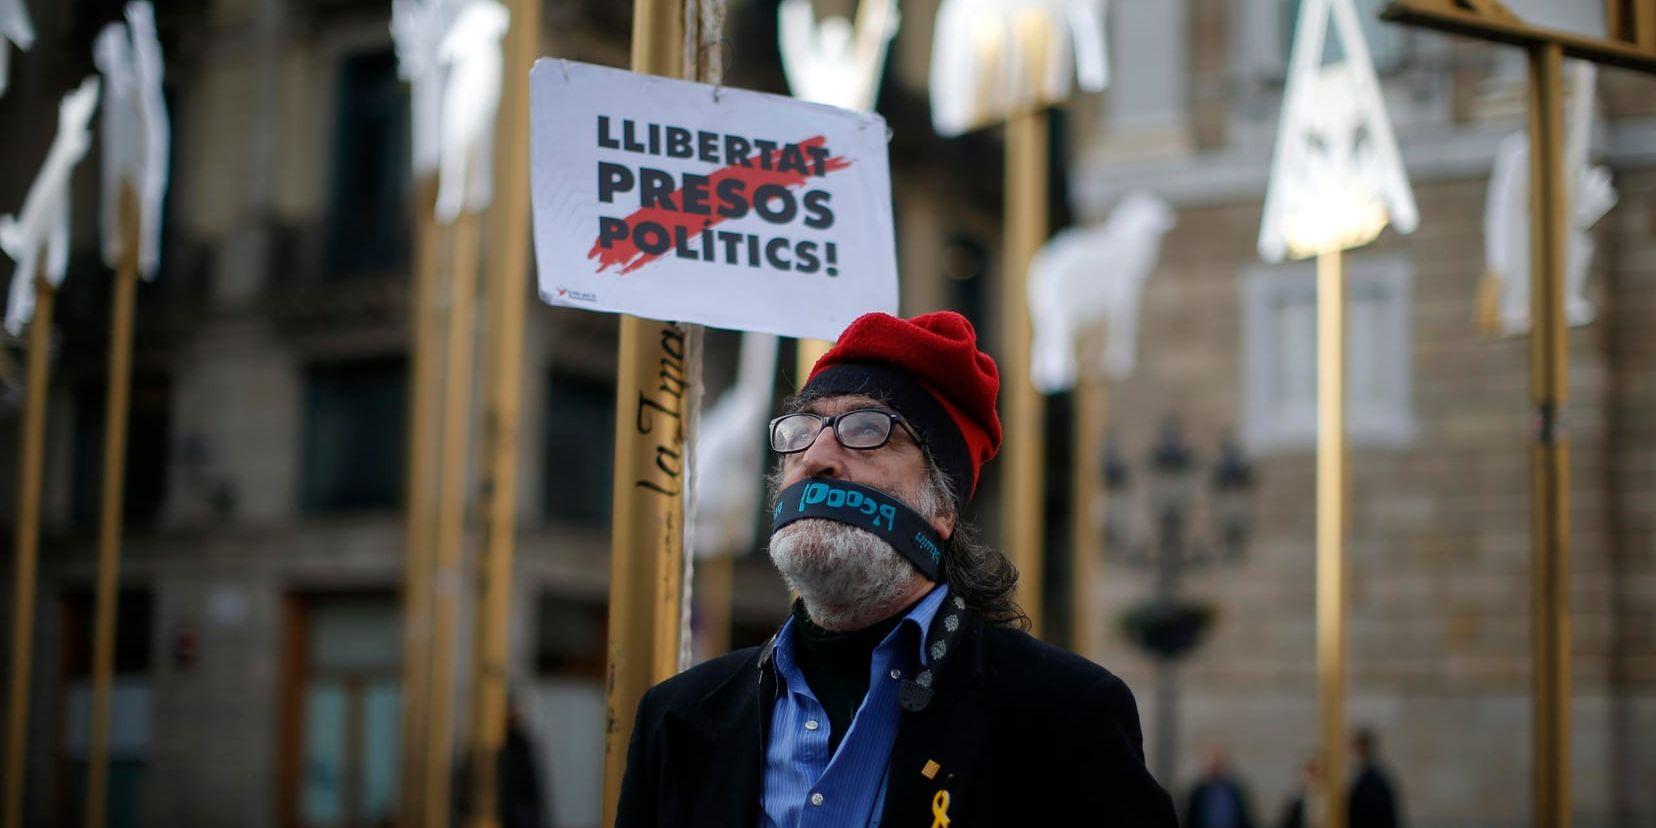 Frige de politiska fångarna! ropar plakaten. Att sju valda politiker är i landsflykt eller fängelse komplicerar regeringsbildningen för separatistblocket i Katalonien.